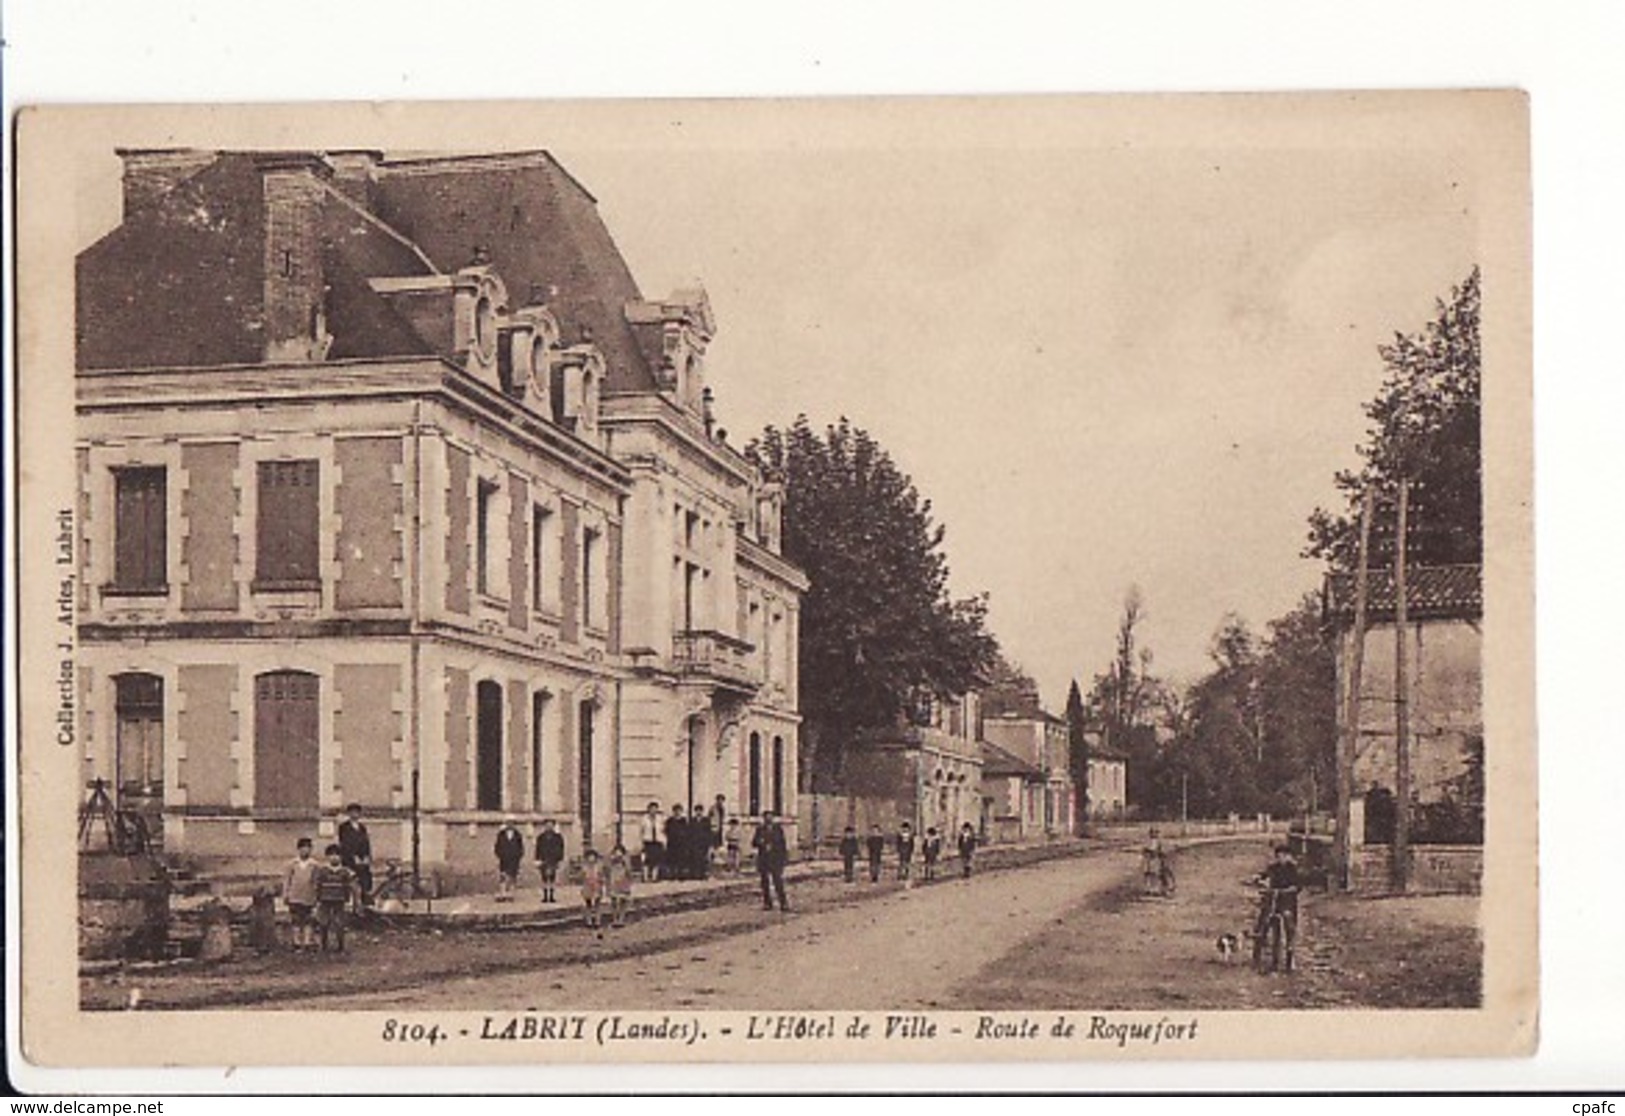 Labrit - L'Hôtel De Ville - Route De Roquefort / Editions Aries N°8104 - Labrit